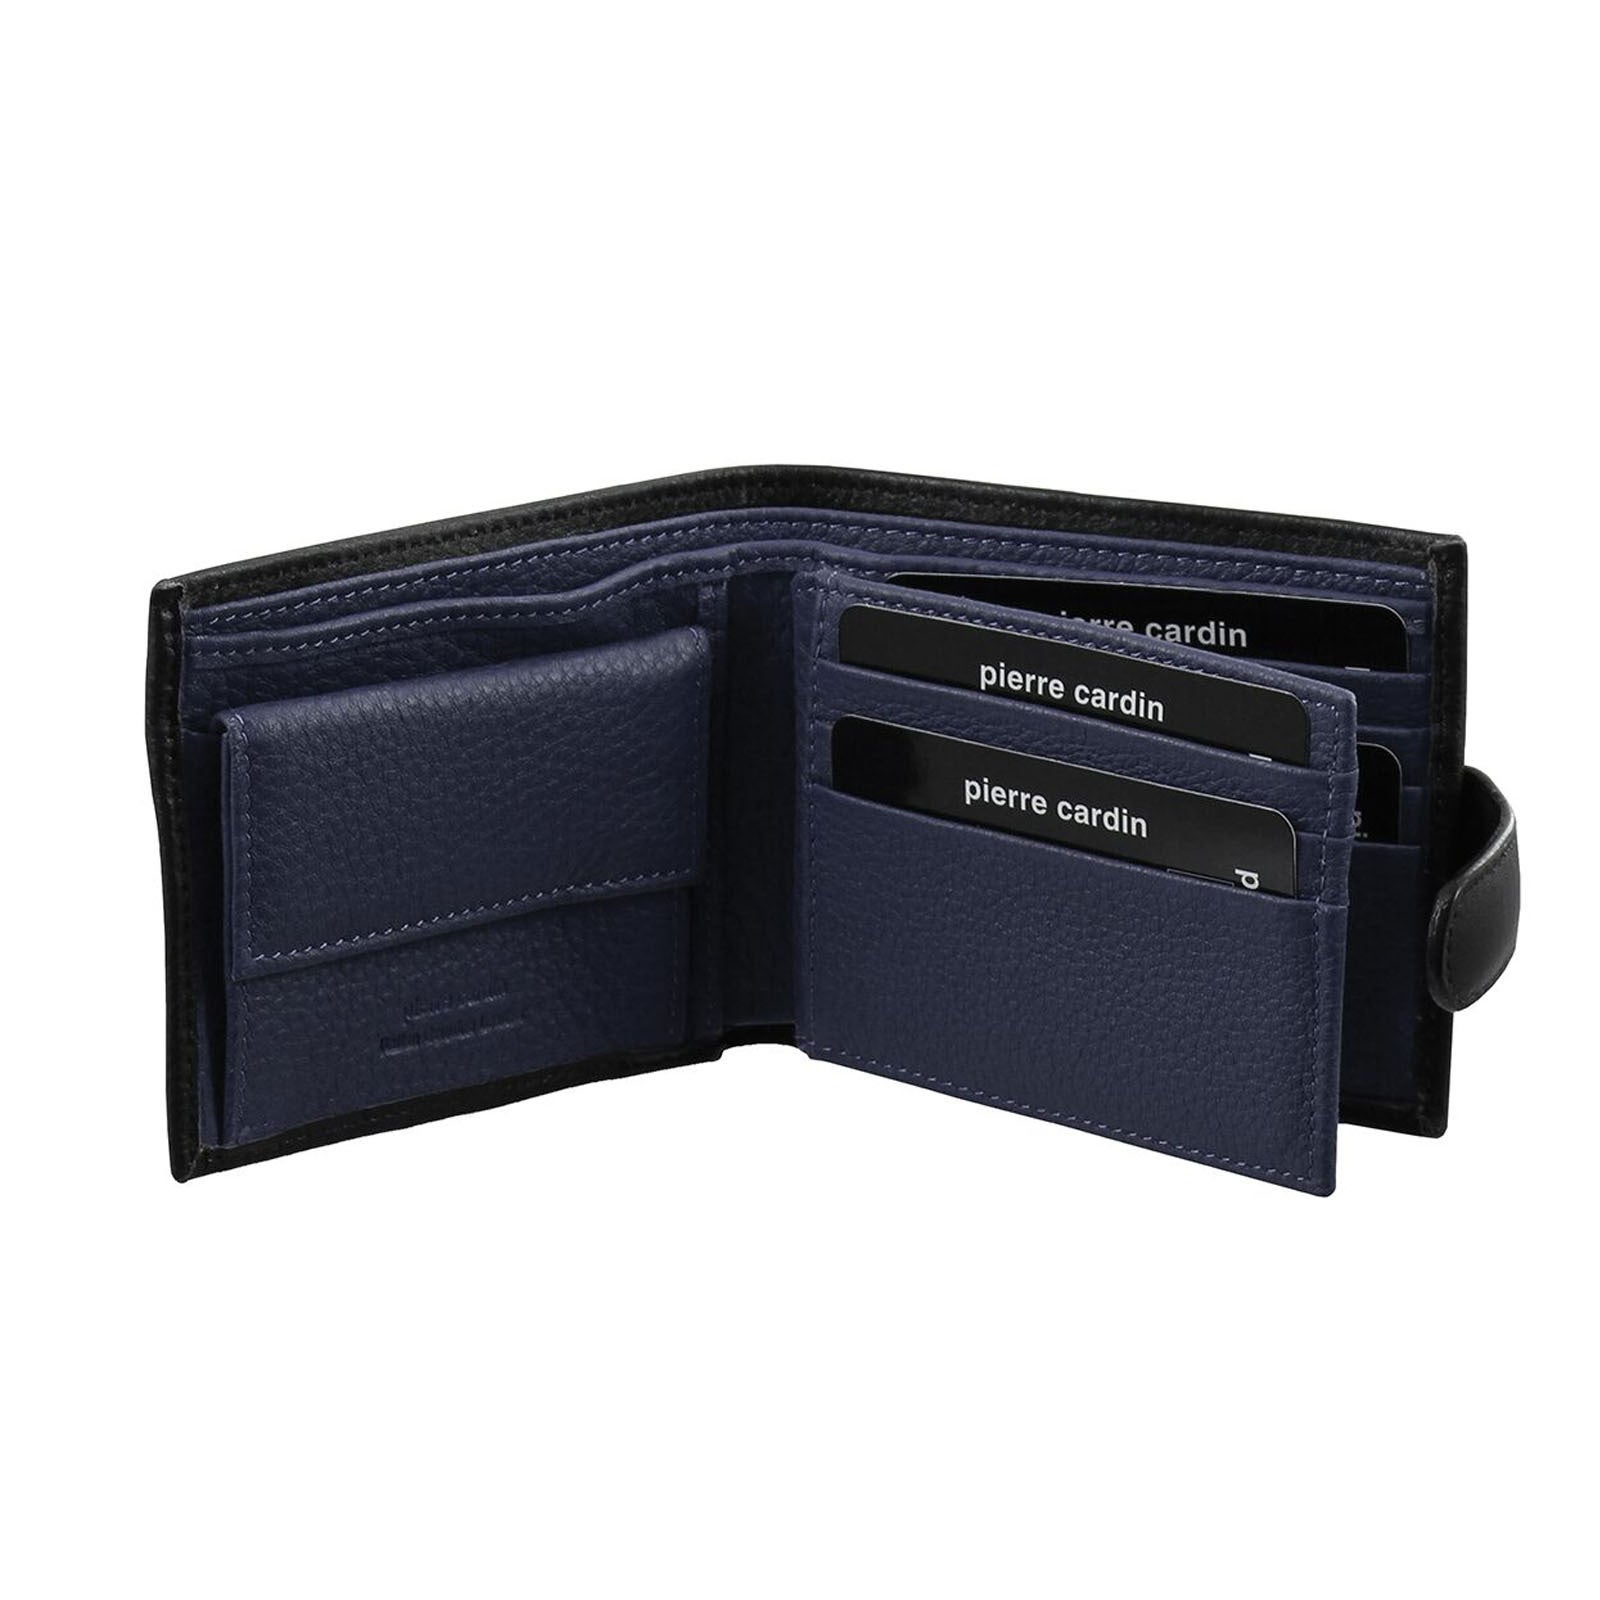 Pierre Cardin Men's Italian Leather Two Tone Wallet - Black Navy | Buy ...